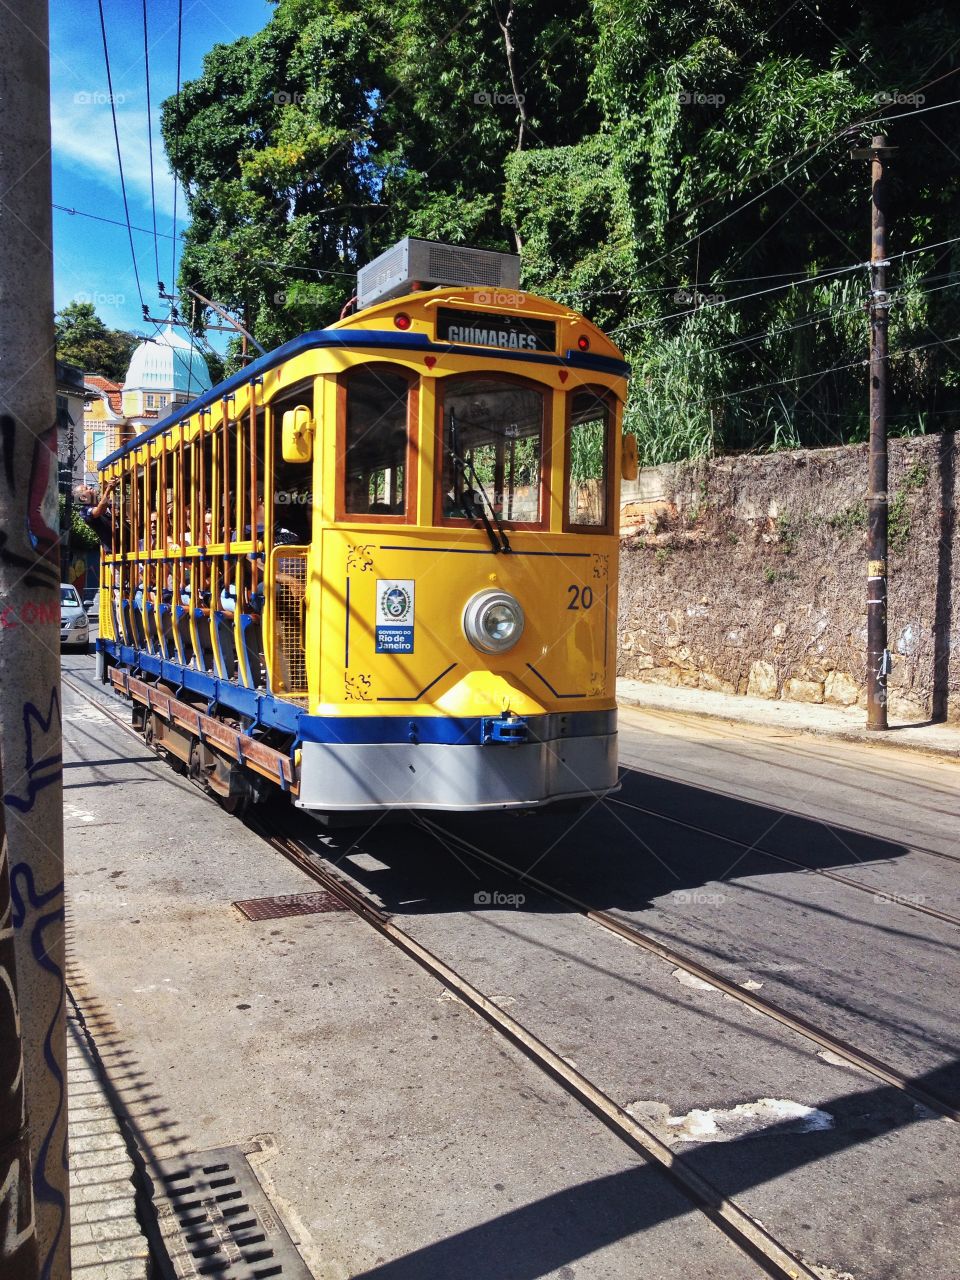 A trolley at Santa Teresa.
Rio de Janeiro, Brasil